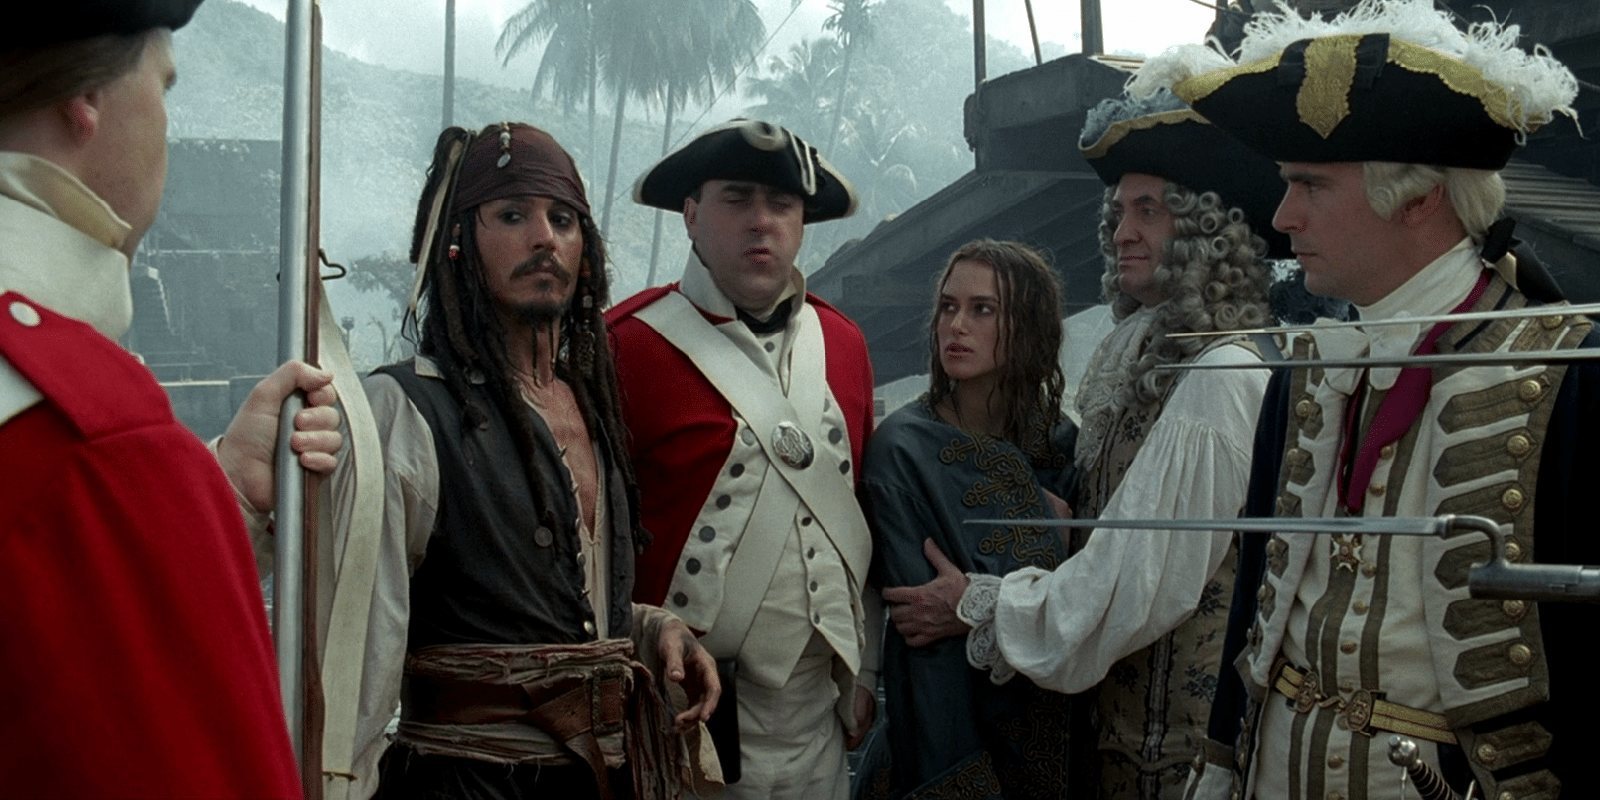 El remake de 'Piratas del Caribe' no aportará nada positivo a la saga